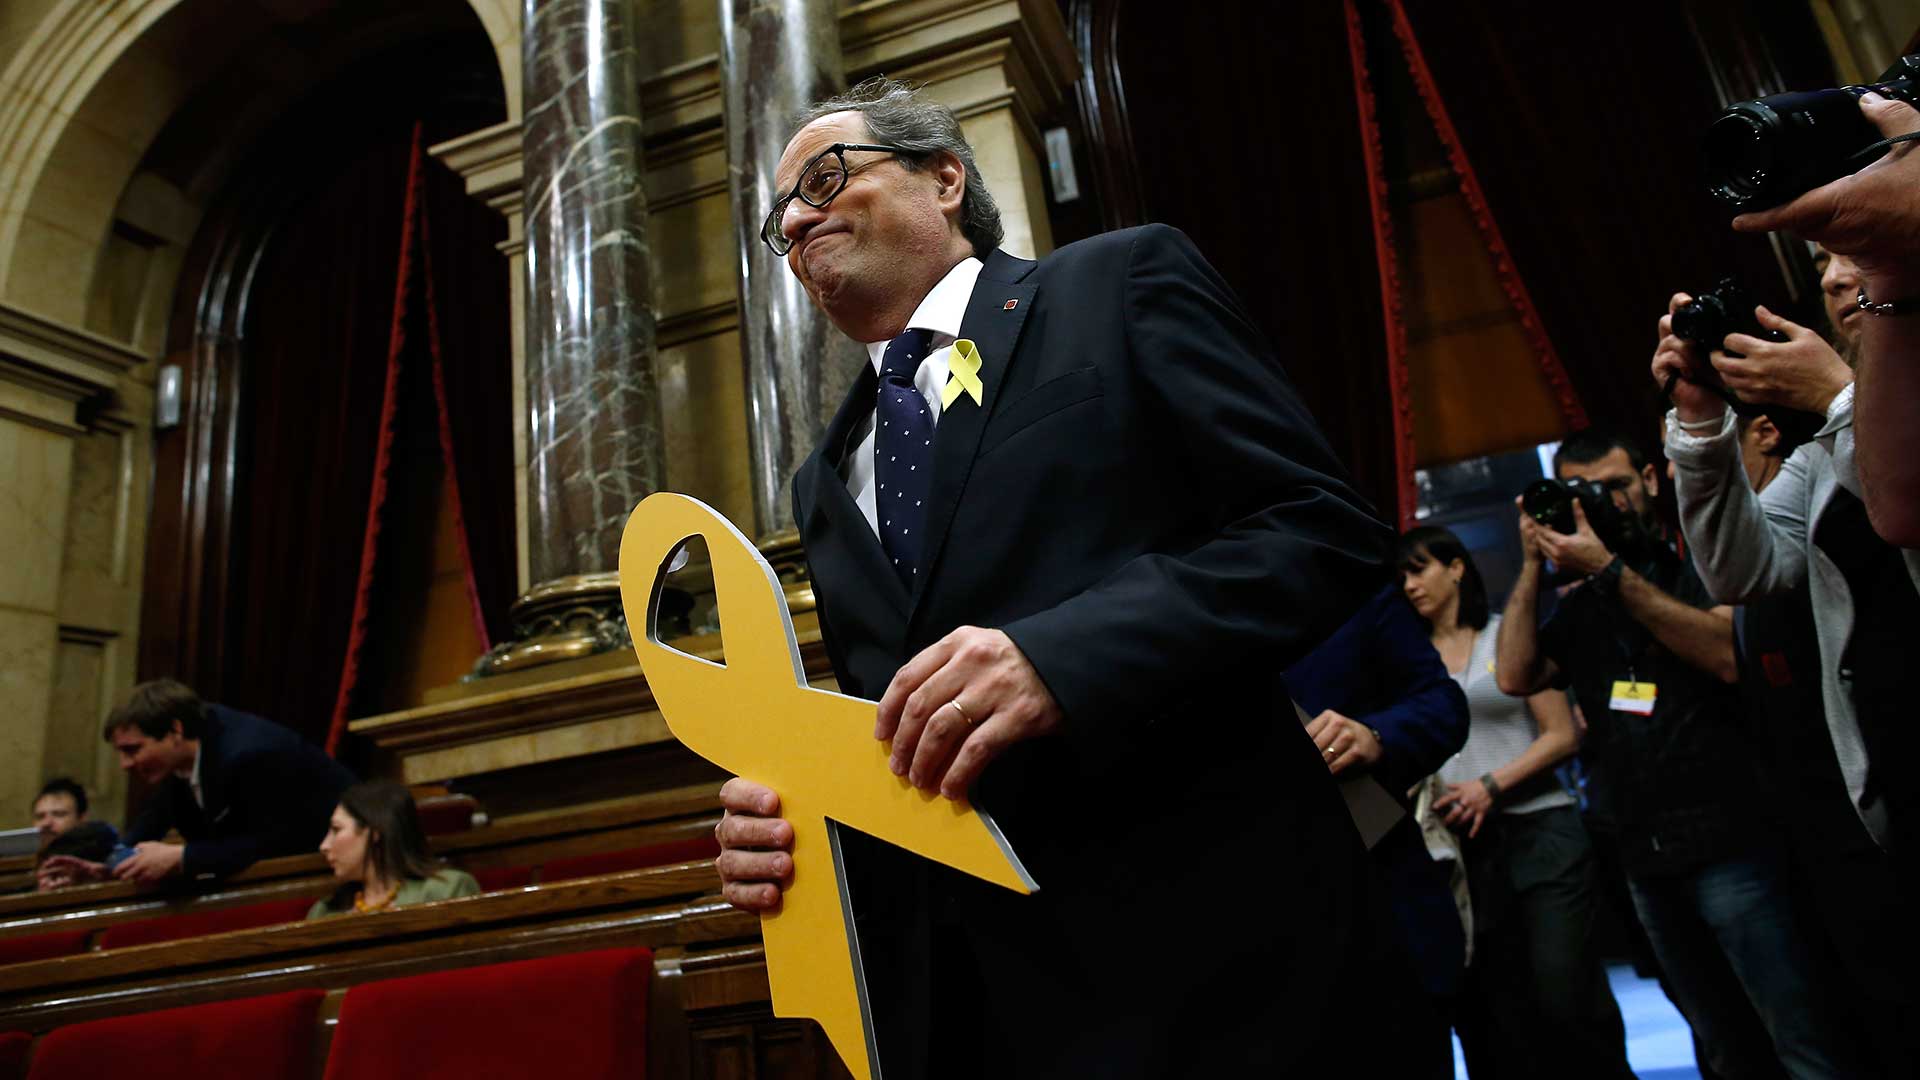 Torra urge a Rajoy a desbloquear el nuevo Govern y amenaza con querellarse